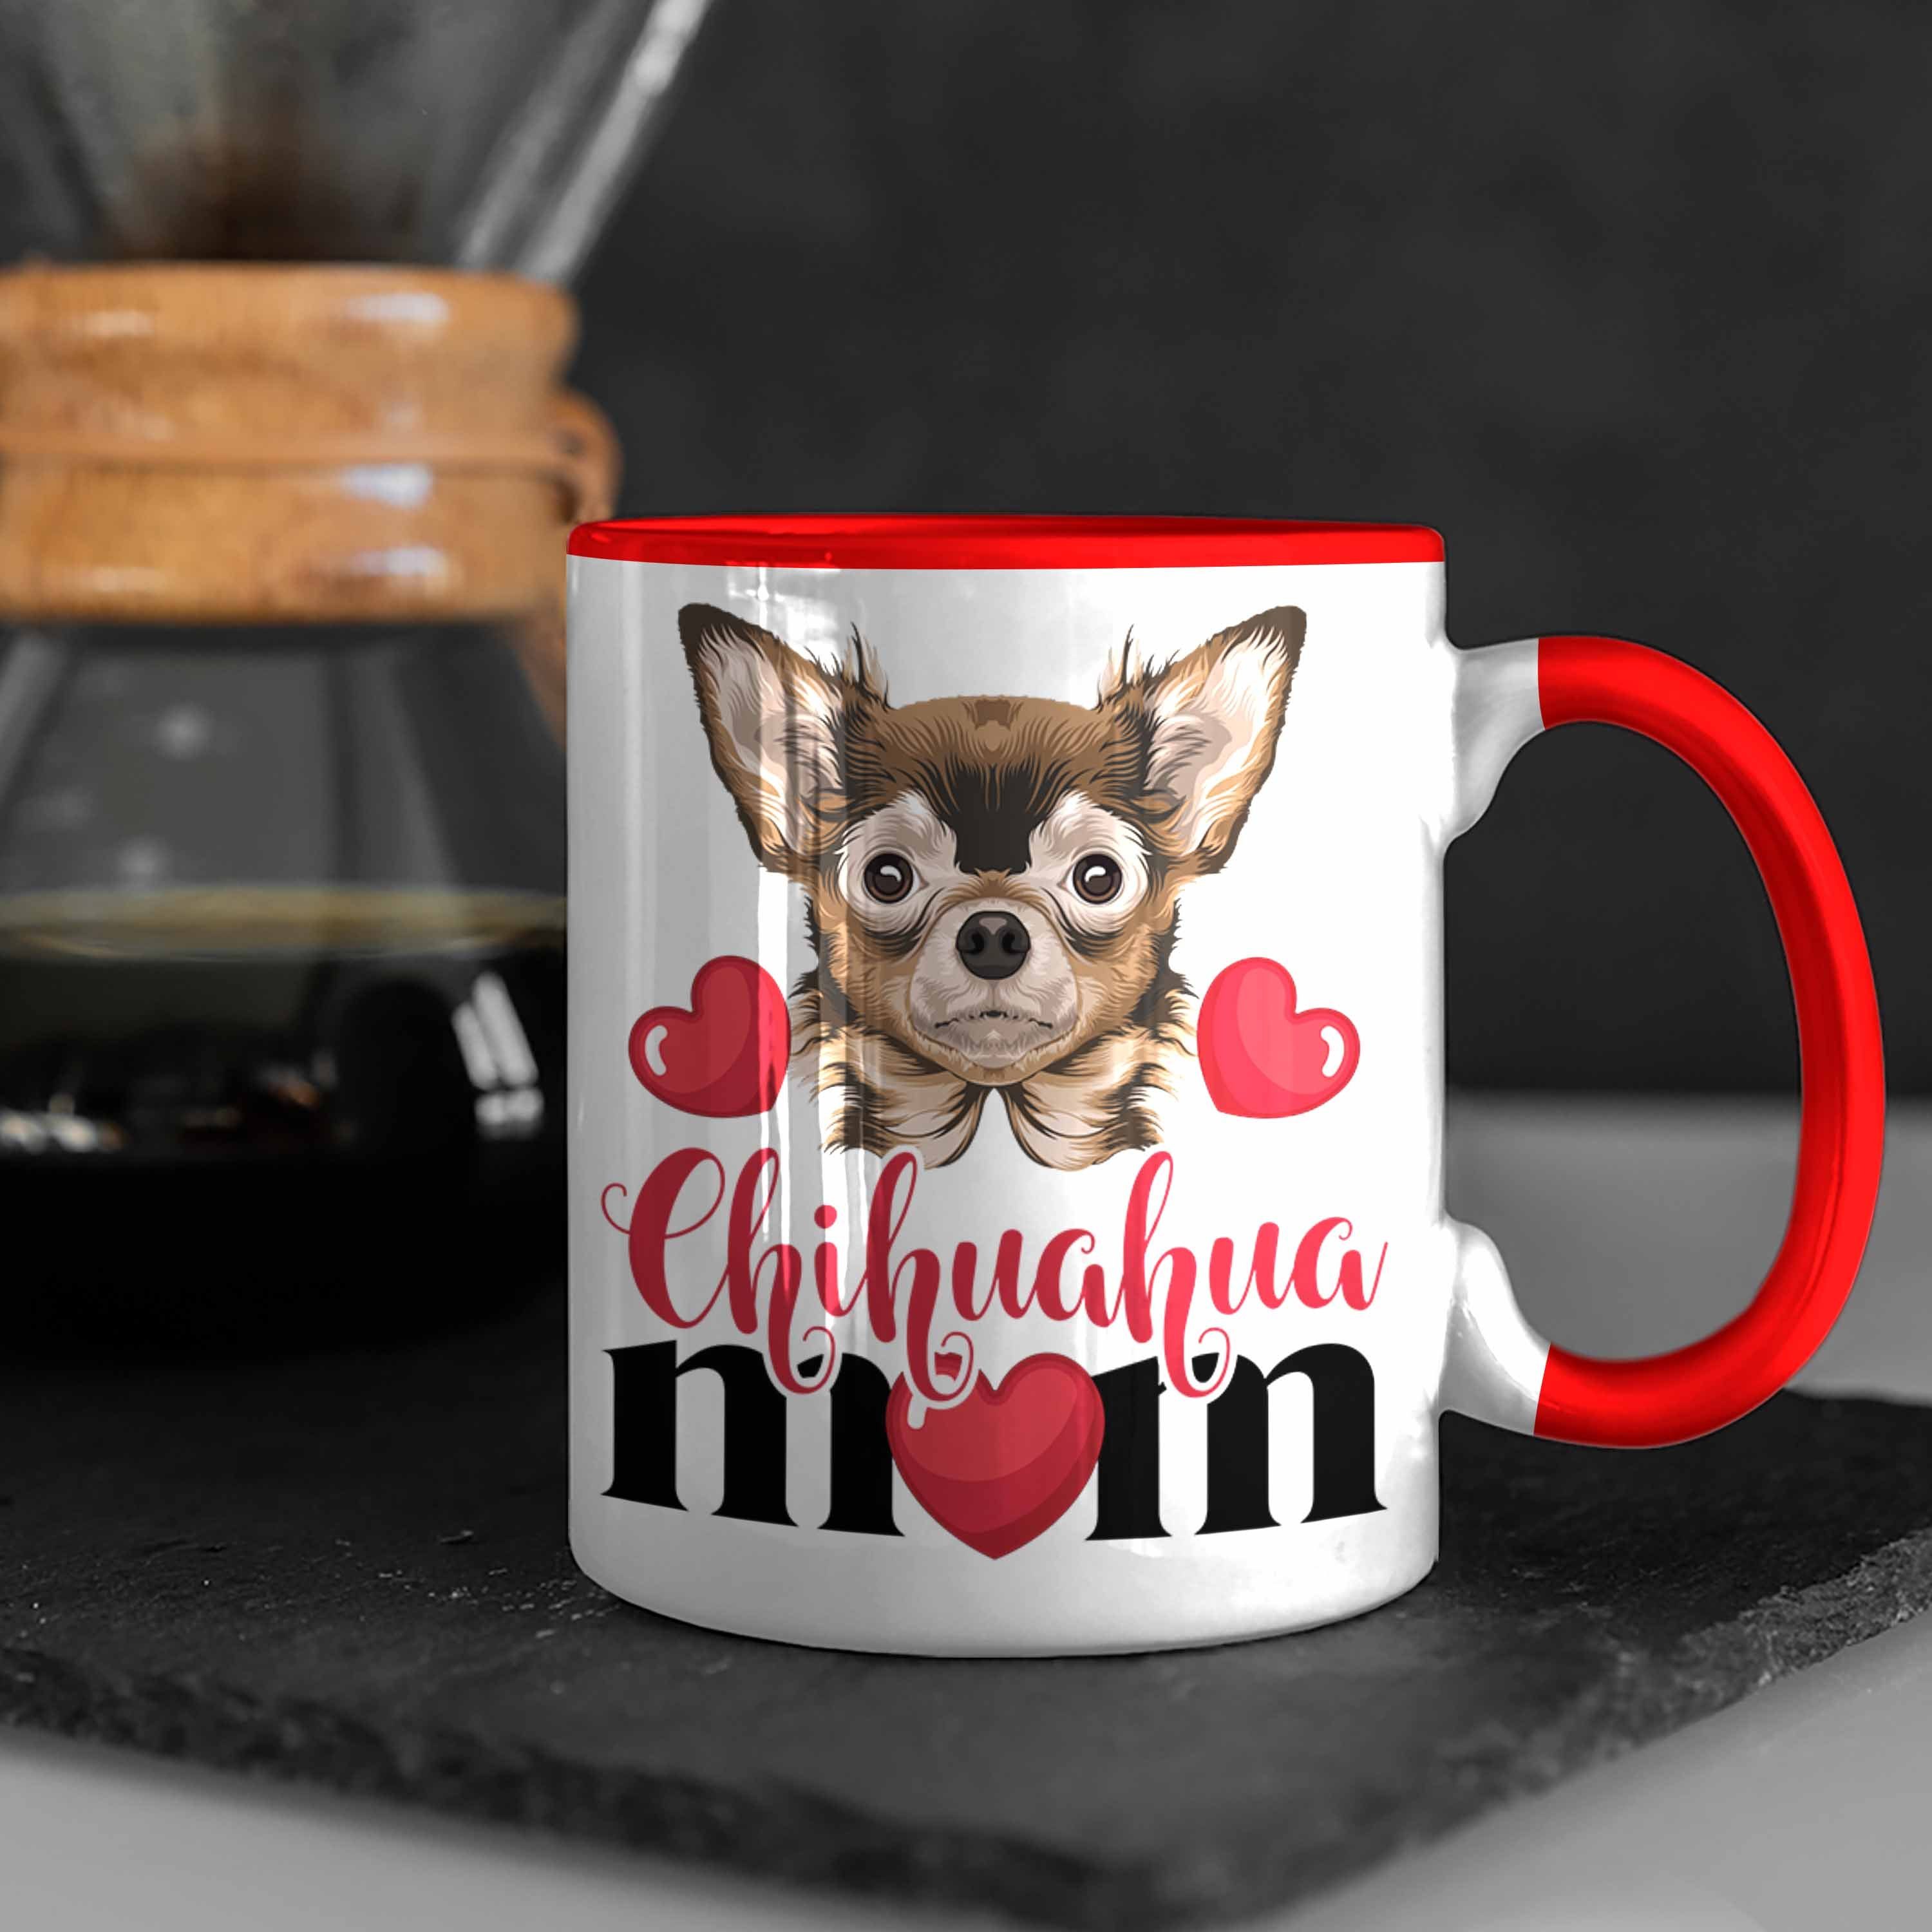 Trendation Tasse Chihuhahua Mom Besitzer Tasse Frauchen Rot Mama Geschenkidee Kaffee-Becher